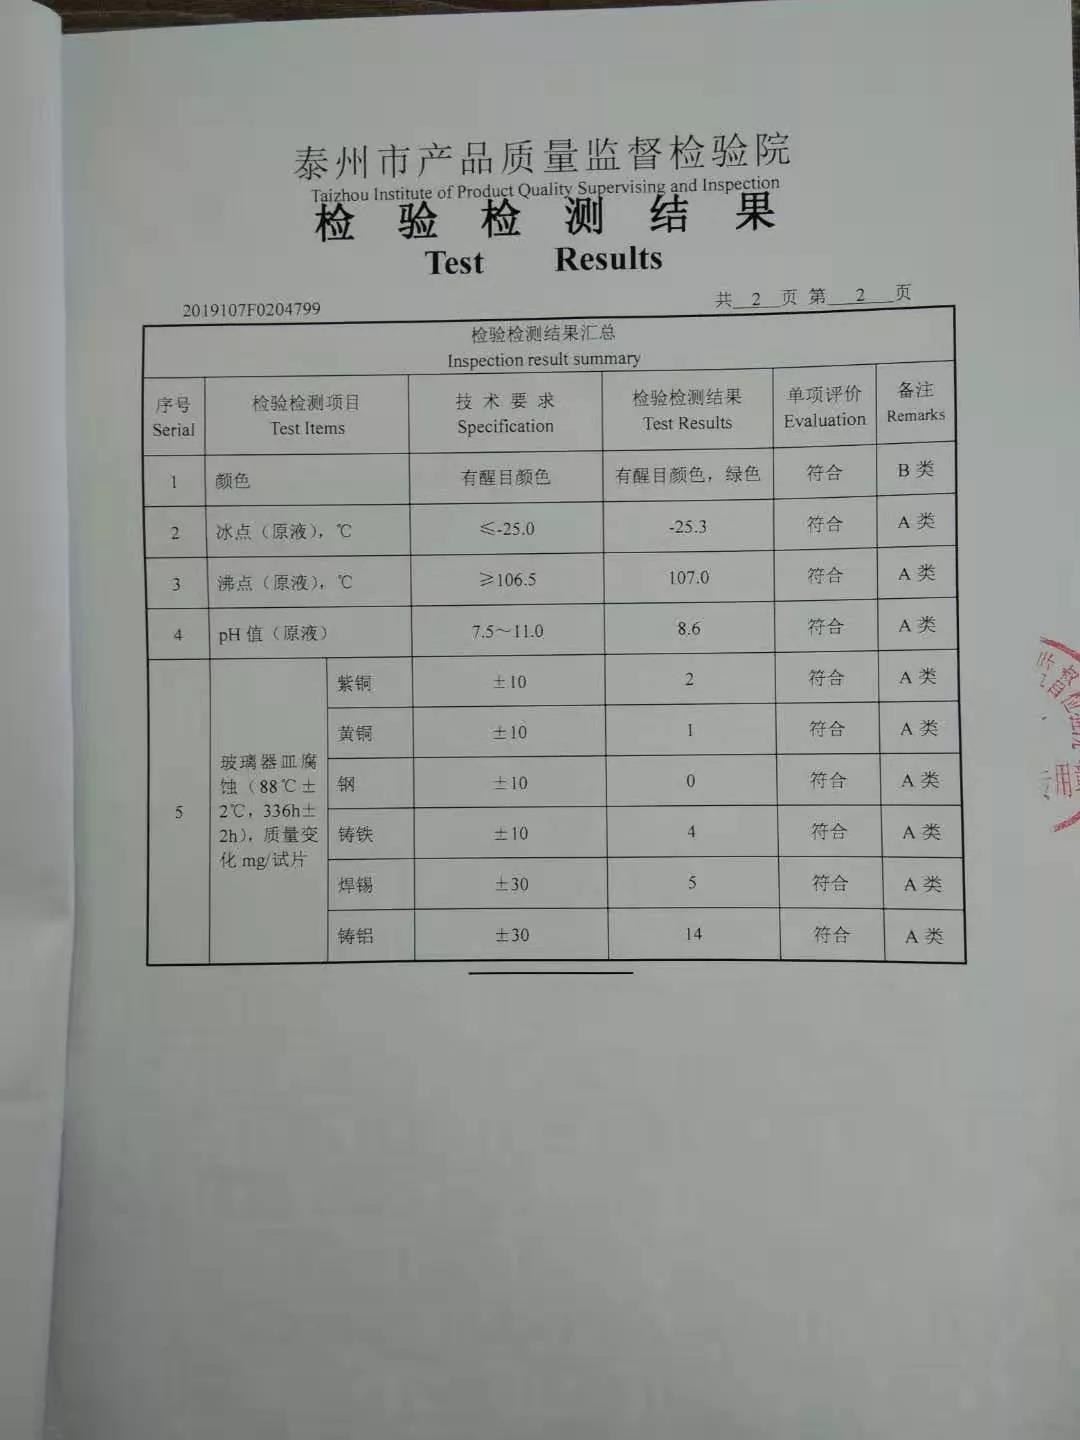 帝航长效防冻液在上海市场监督管理局的抽检检查中产品合格